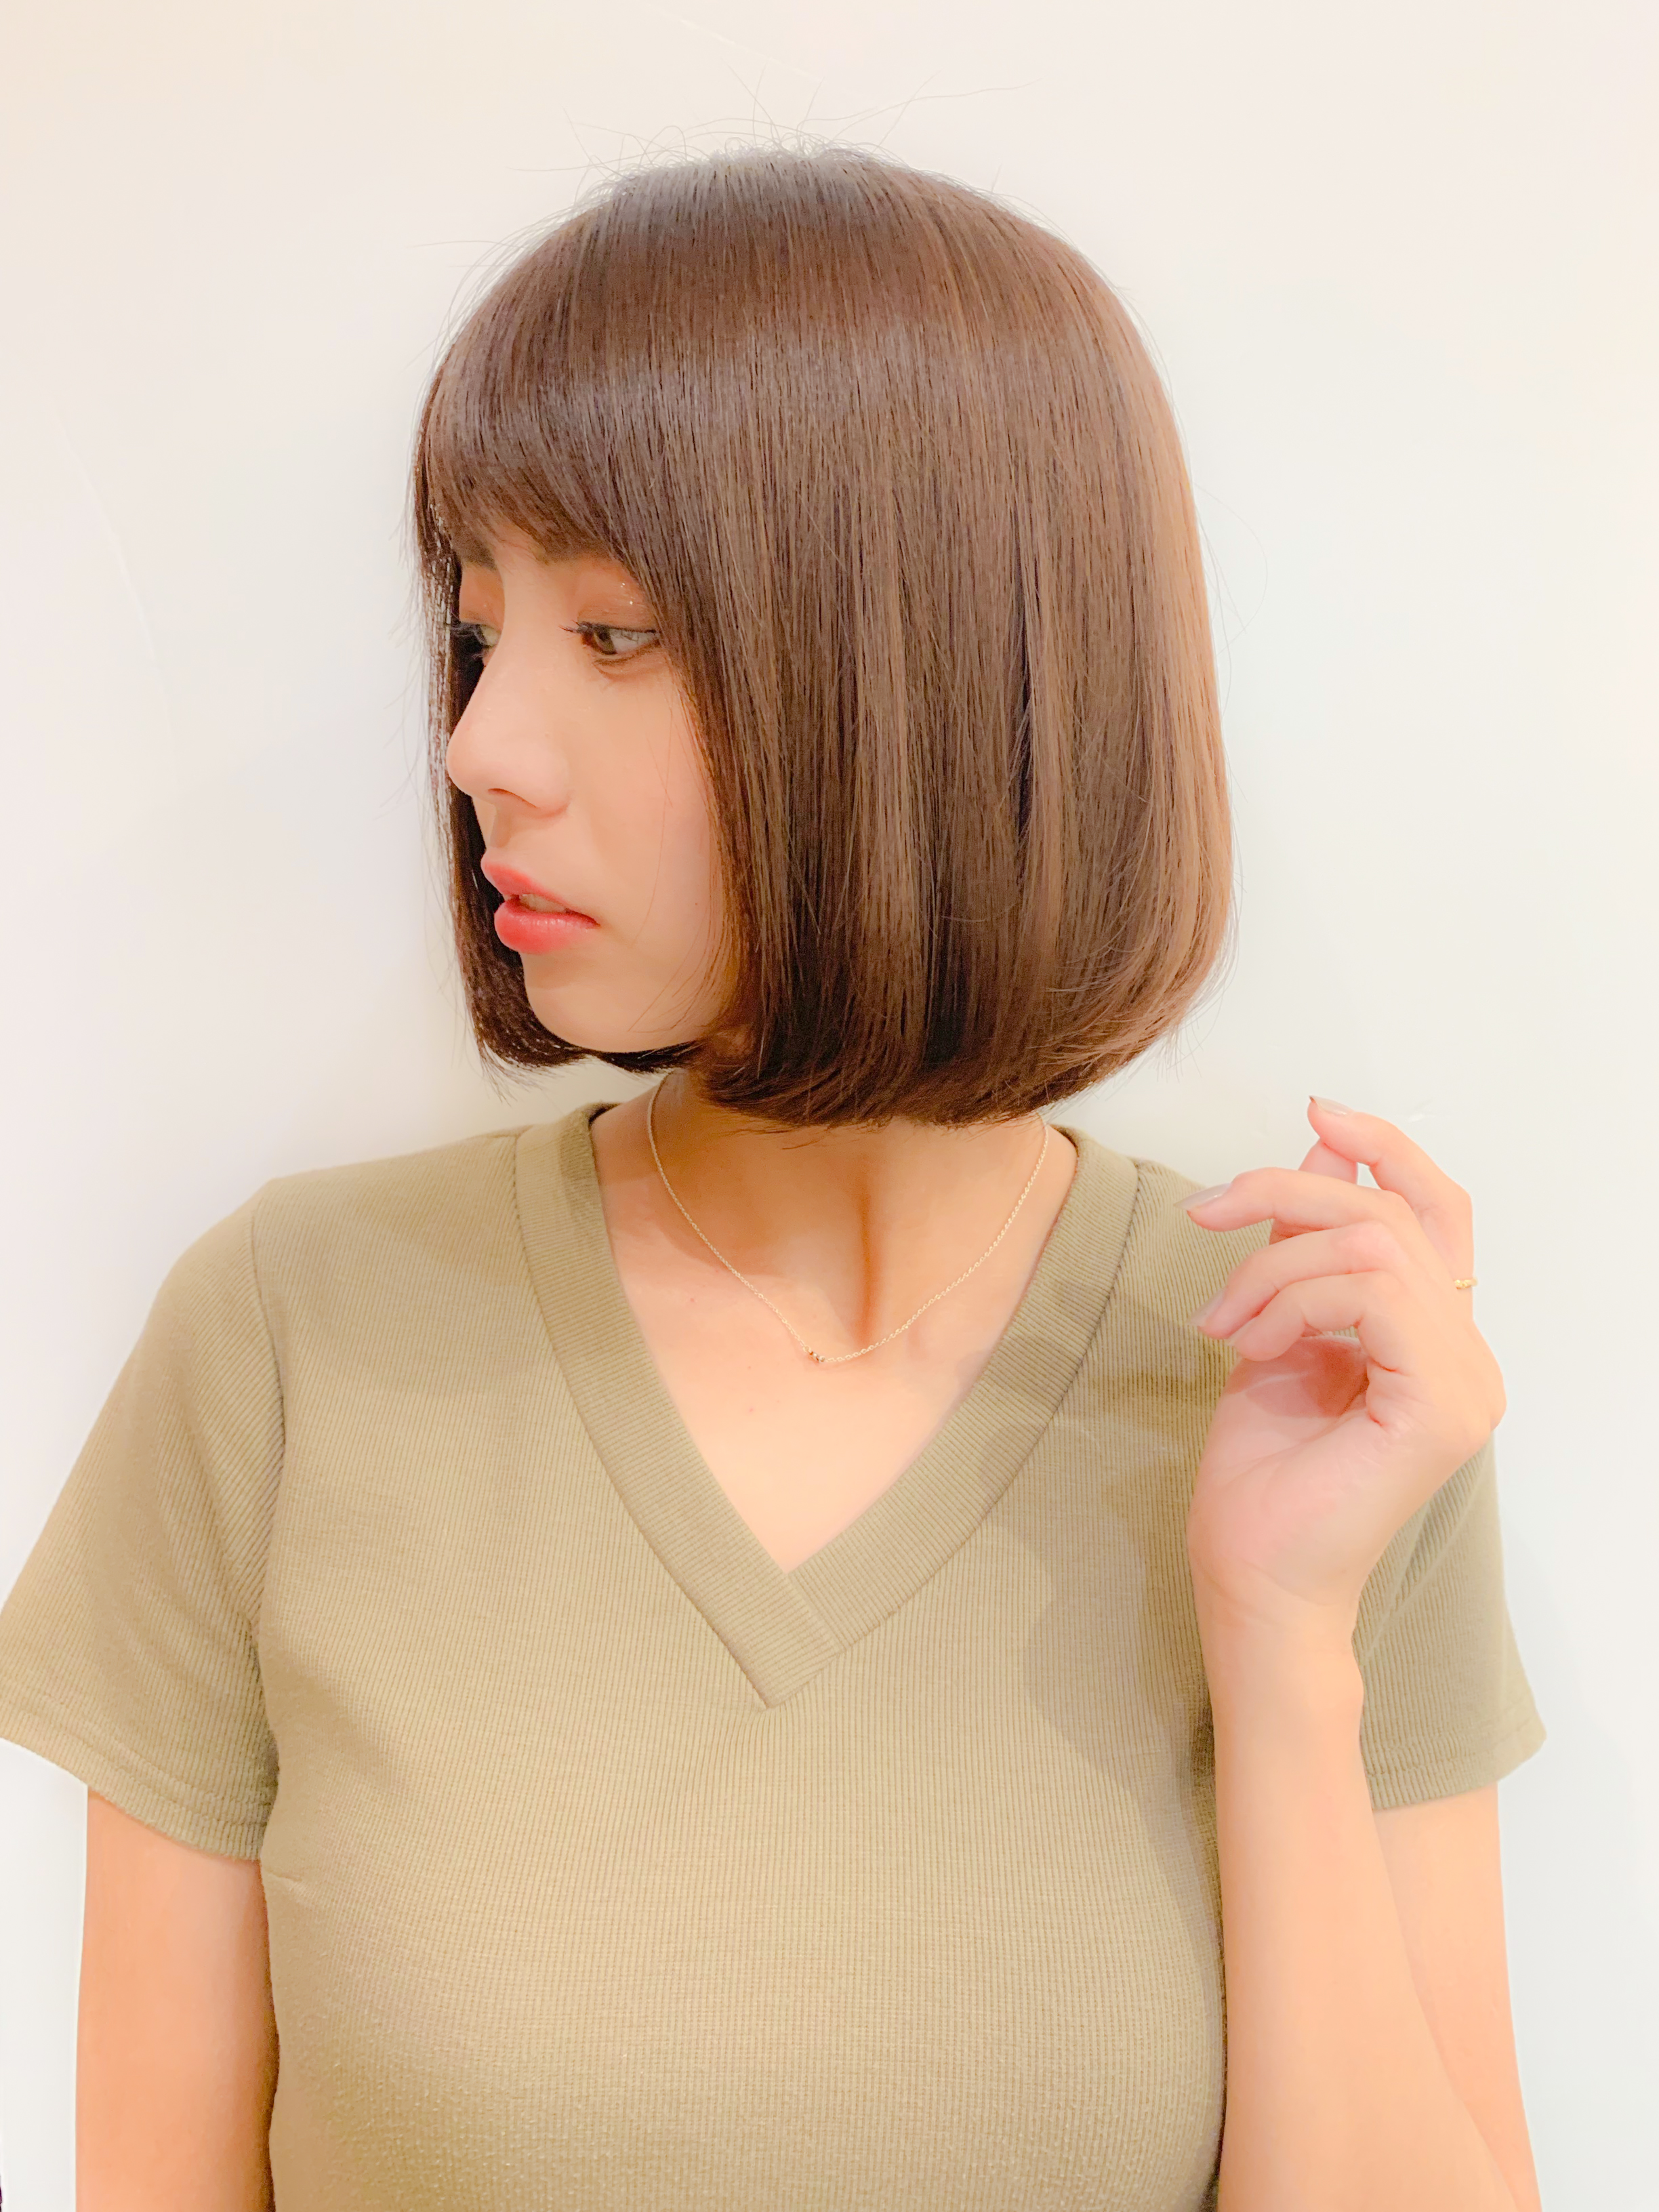 21年春 ギリギリ結べる長さのボブで人気の髪型選 似合わせカットが上手い東京の美容師 美容室minx銀座 蛭田のブログ